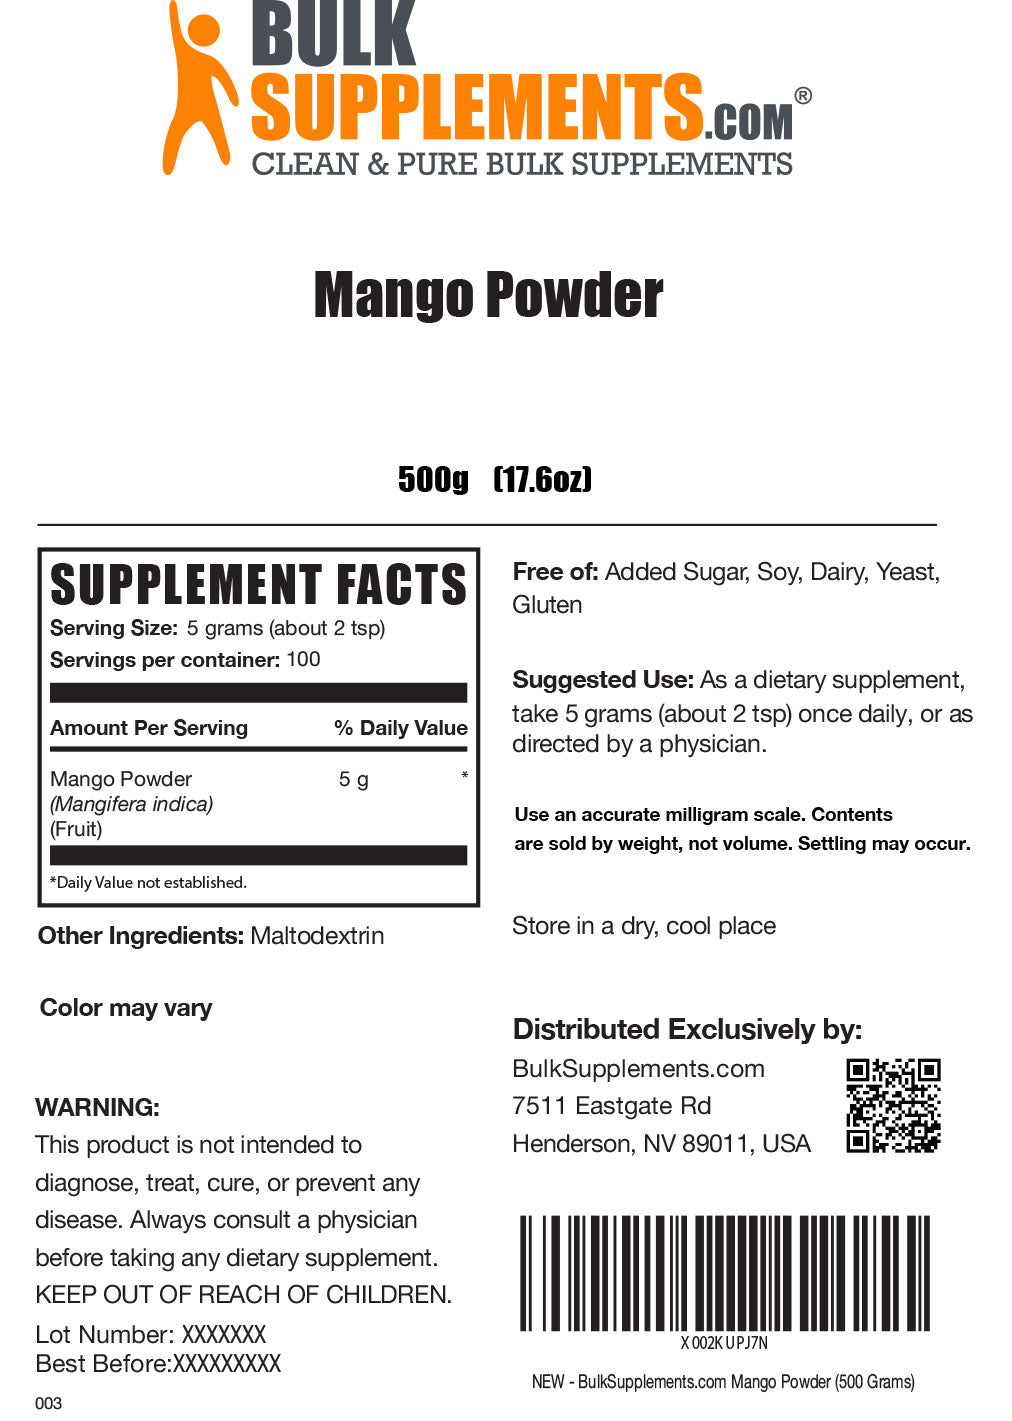 Mango Powder Supplement Facts